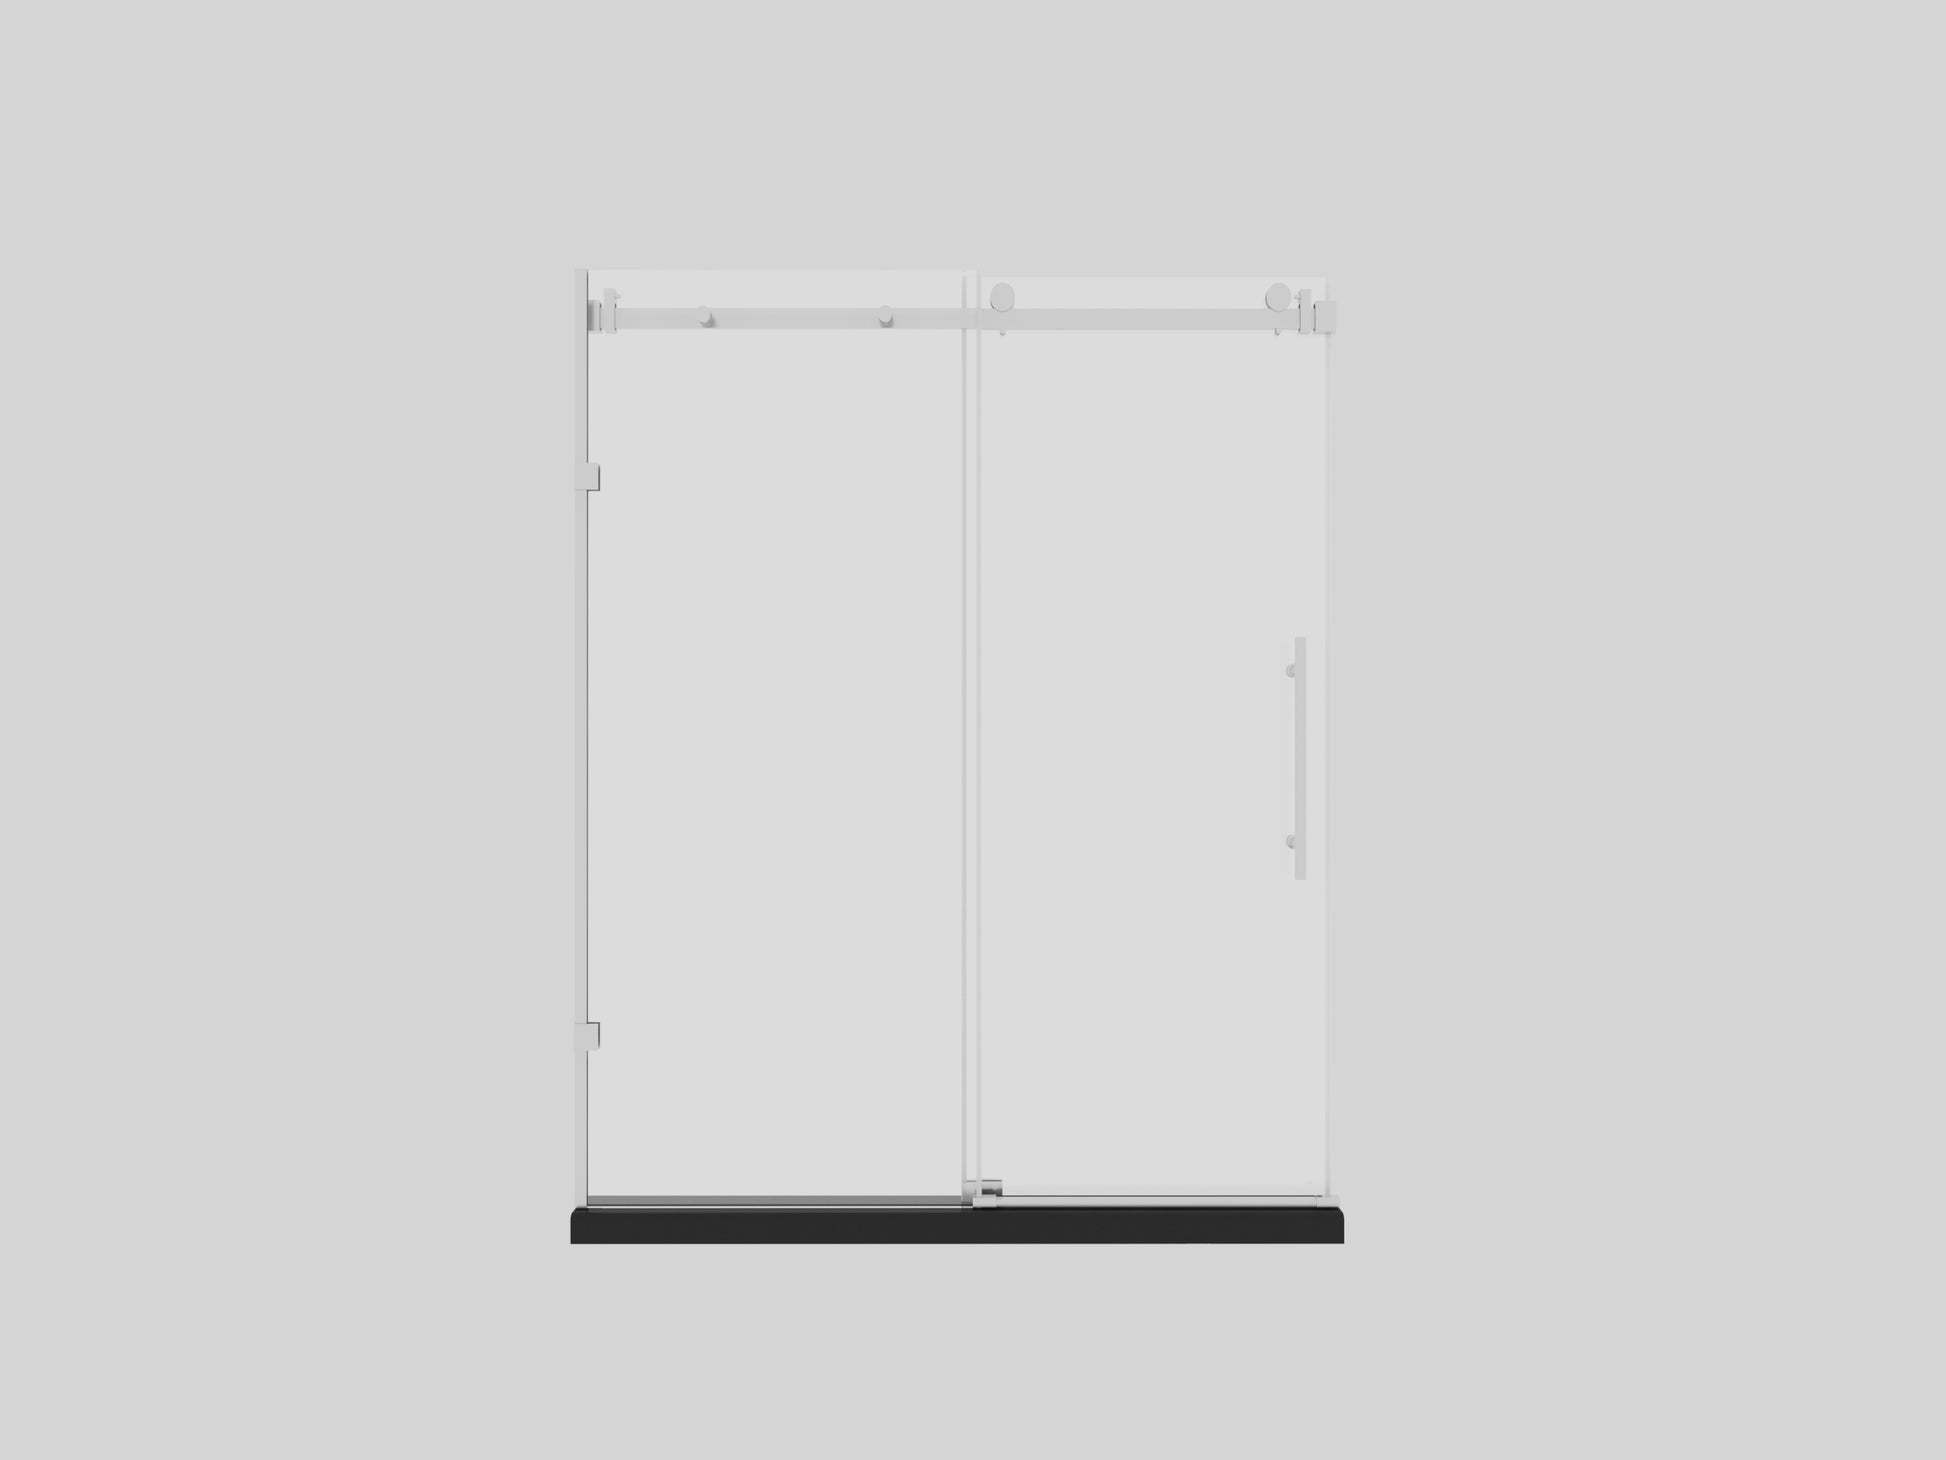 Frameless Sliding Glass Shower Doors 72" Width X